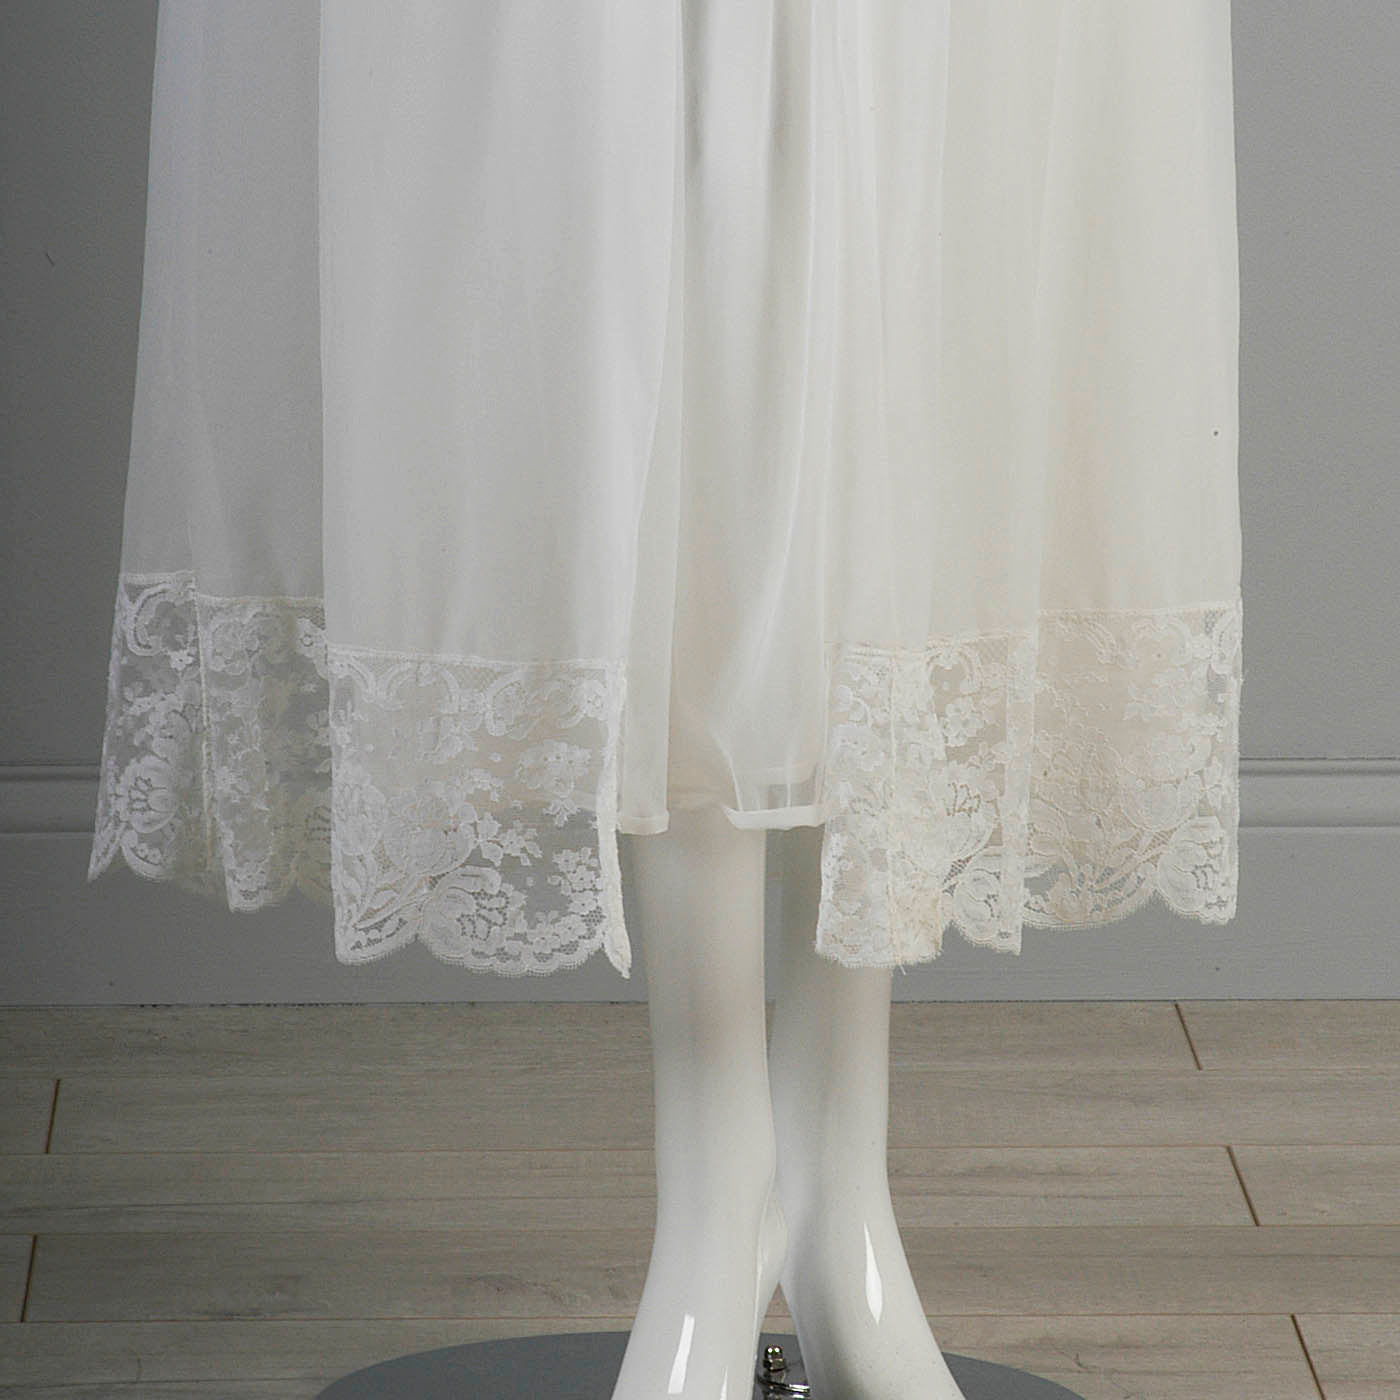 1960s White Nightgown and Peignoir Set